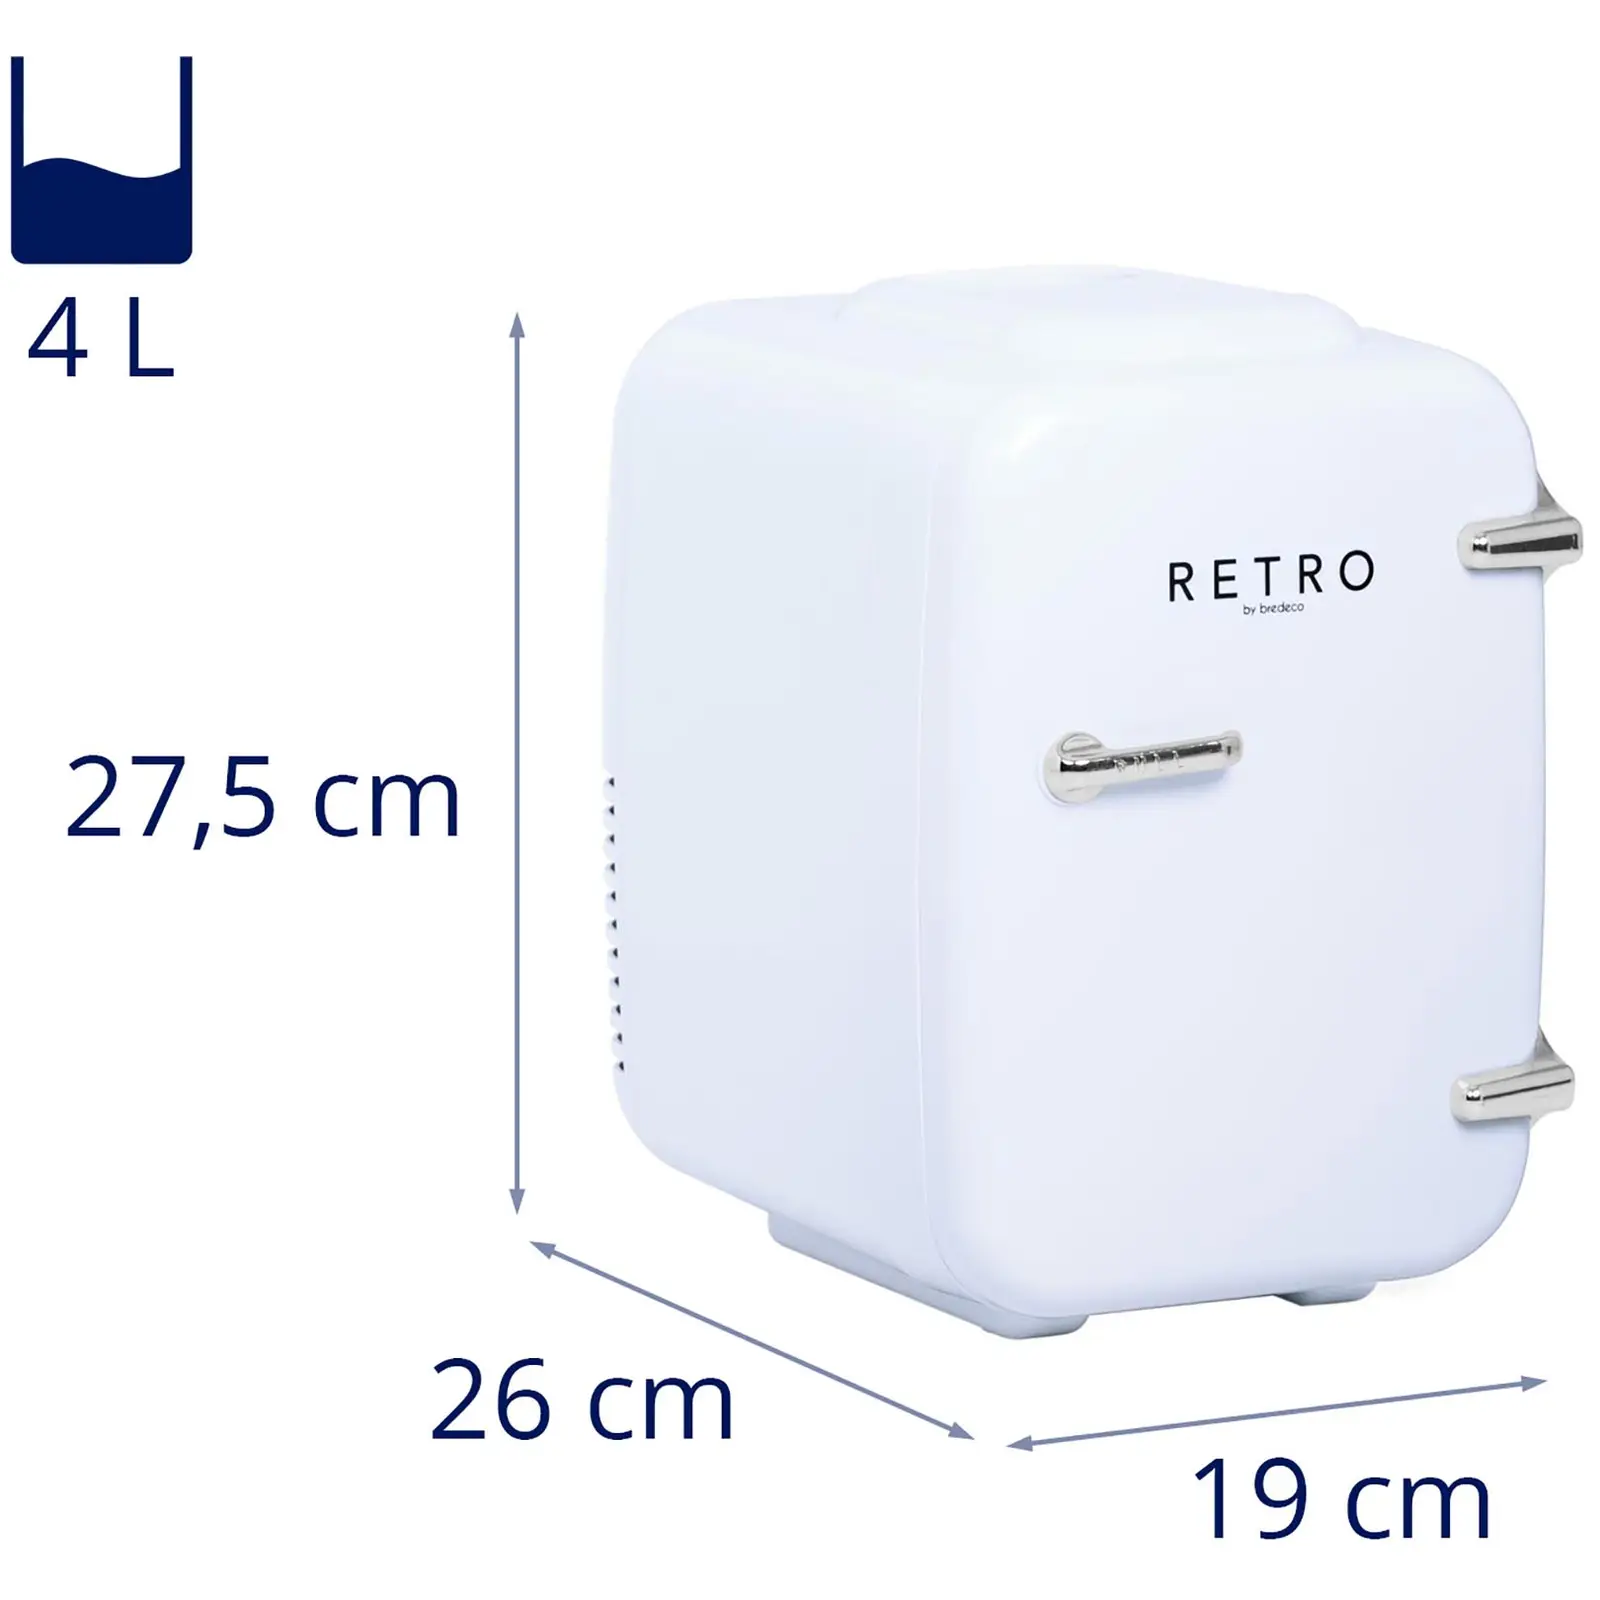 Mini Kühlschrank - 4 L - weiß